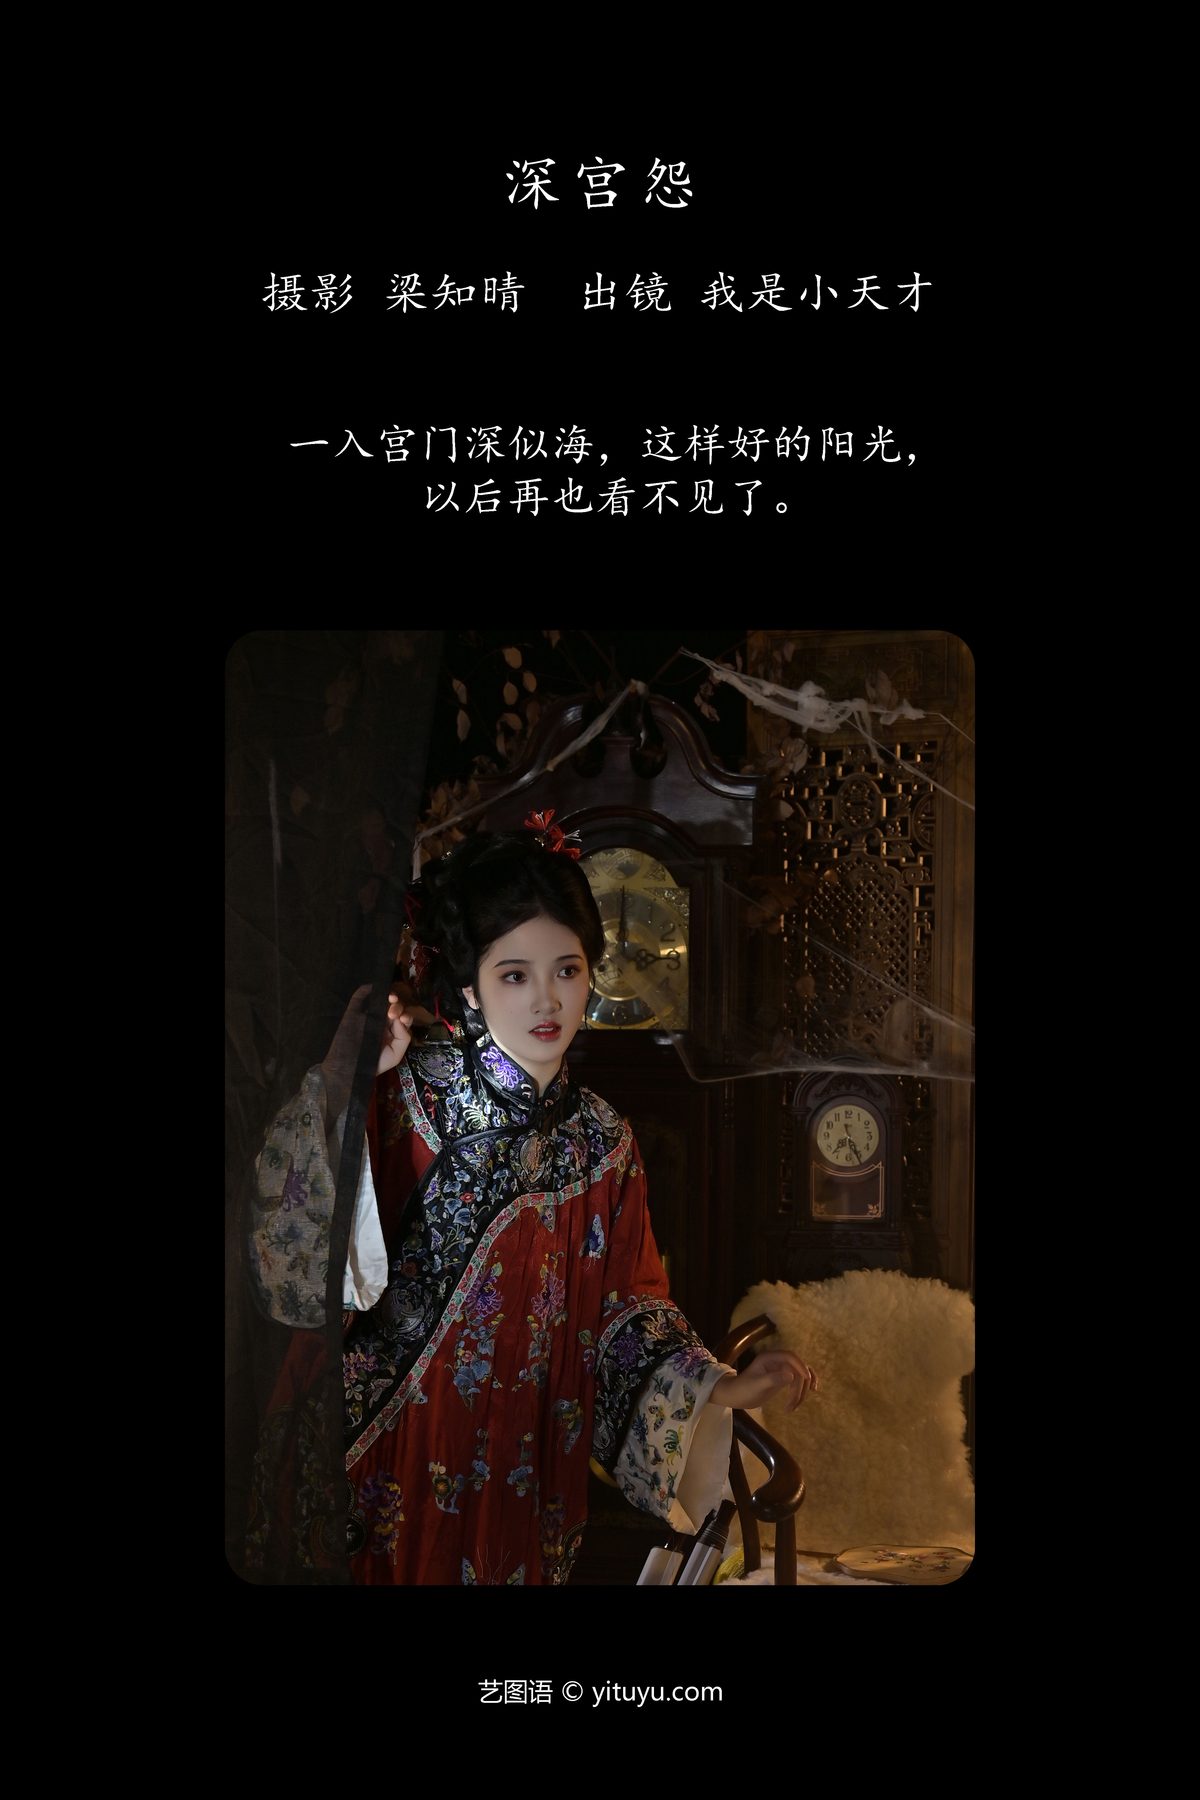 YiTuYu艺图语 Vol 5522 Wo Shi Xiao Tian Cai 0002 5915939479.jpg